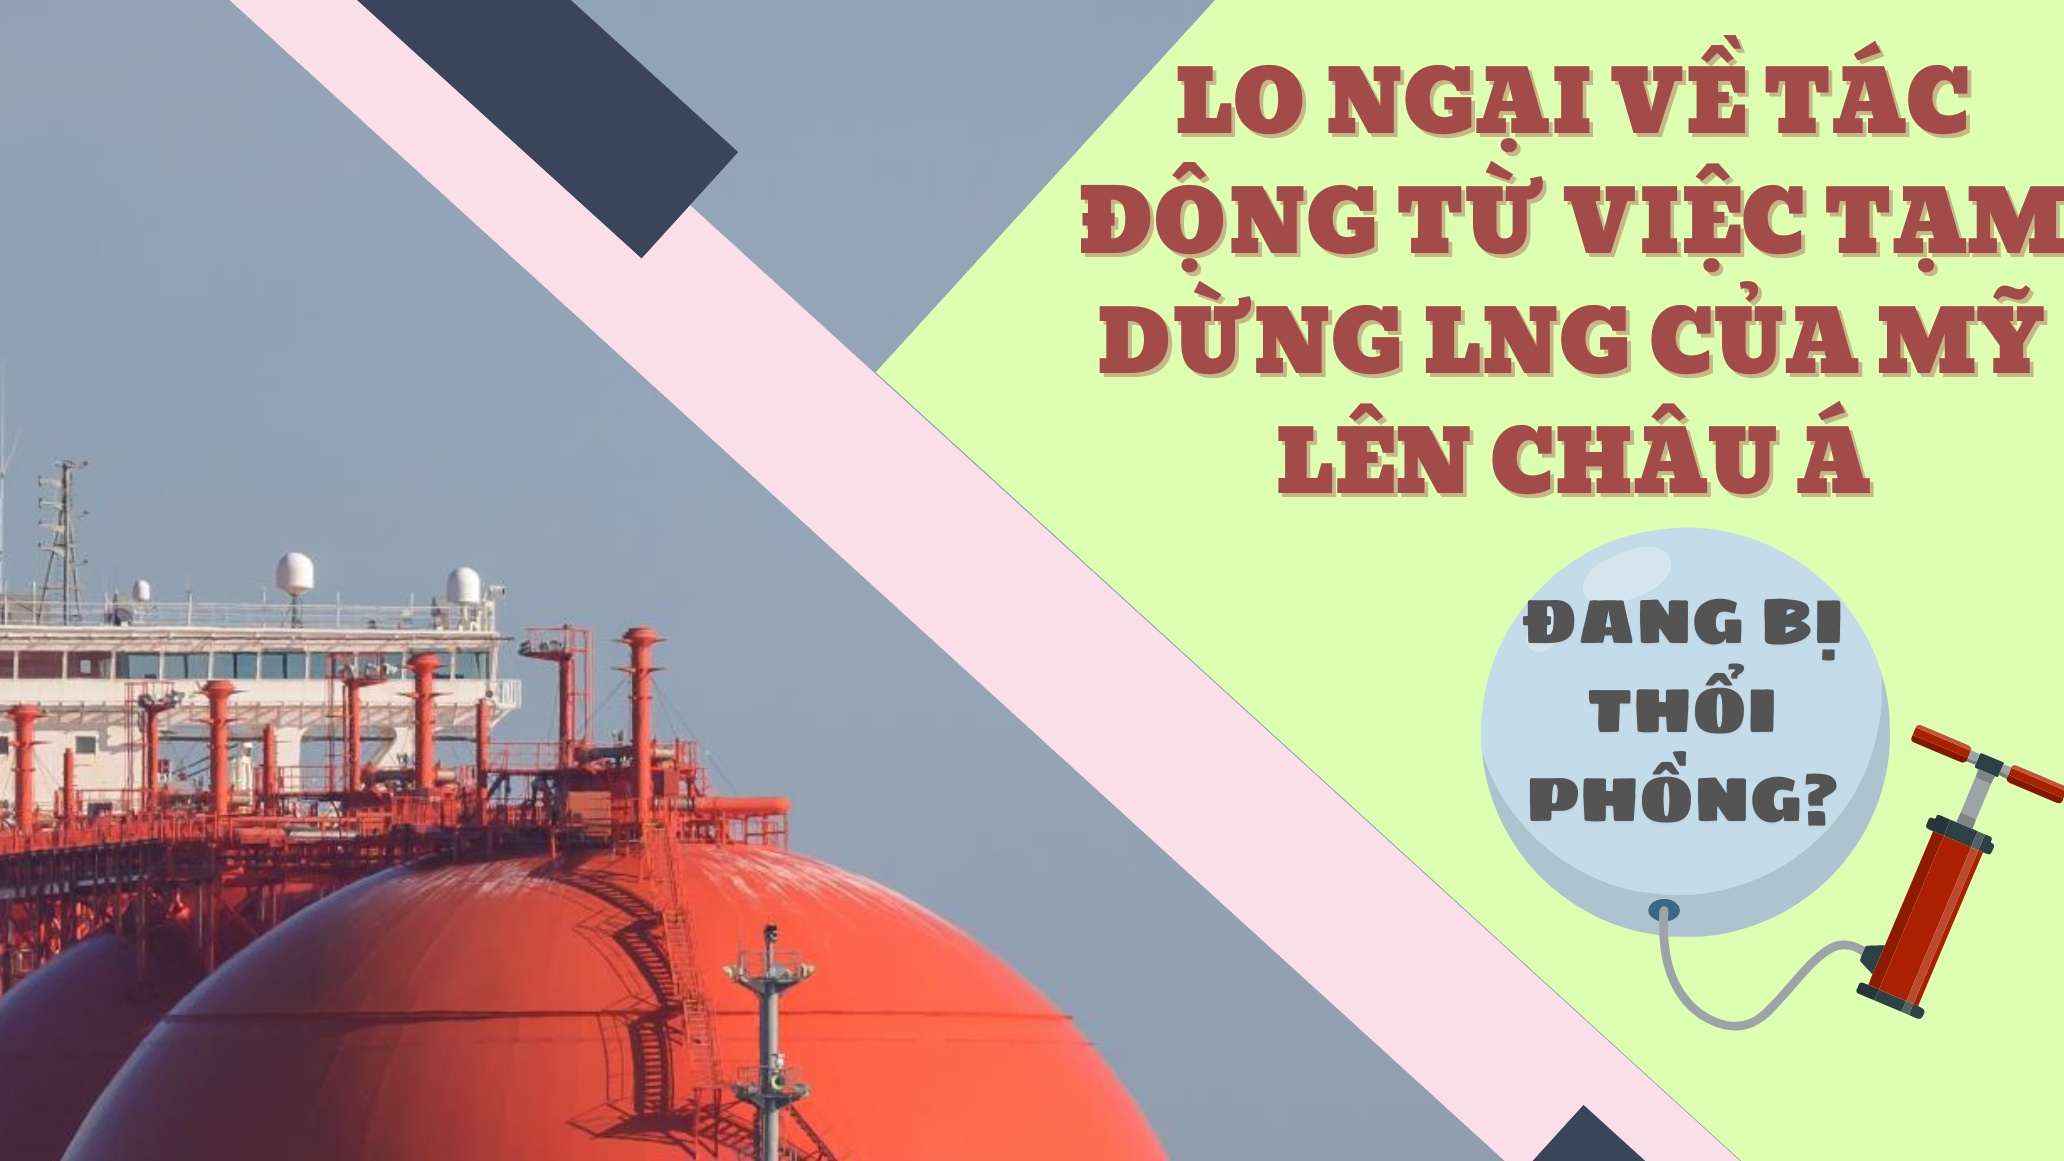 Lo ngại về tác động của việc tạm dừng LNG của Mỹ lên châu Á đang bị thổi phồng?